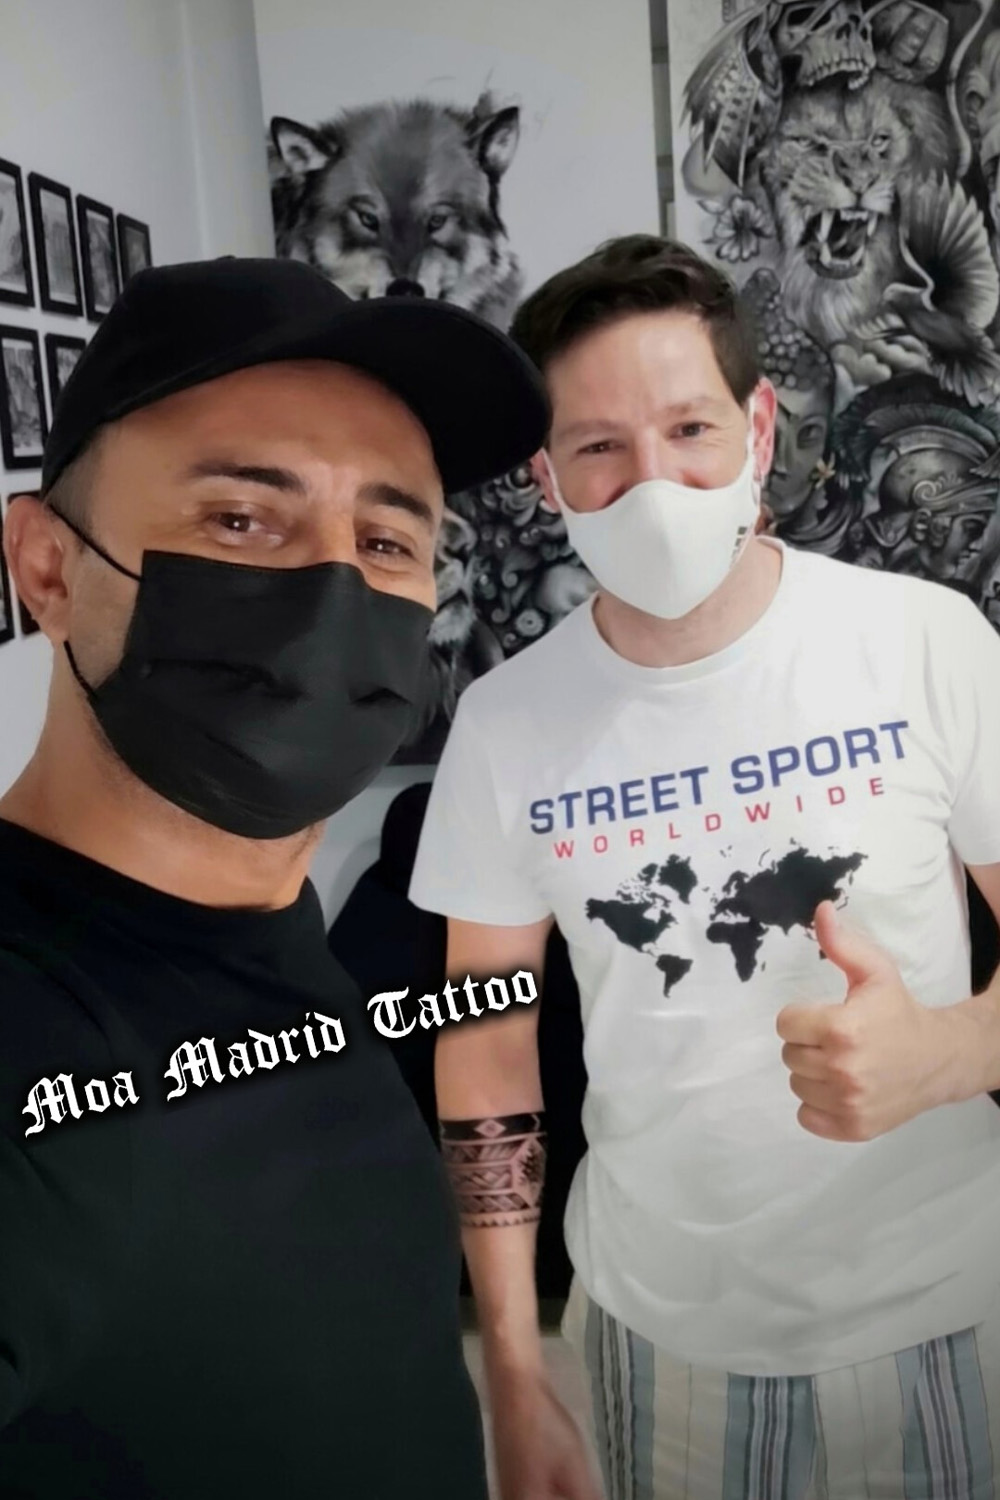 Marcos ha venido desde Andorra a mi estudio de tatuaje de Madrid